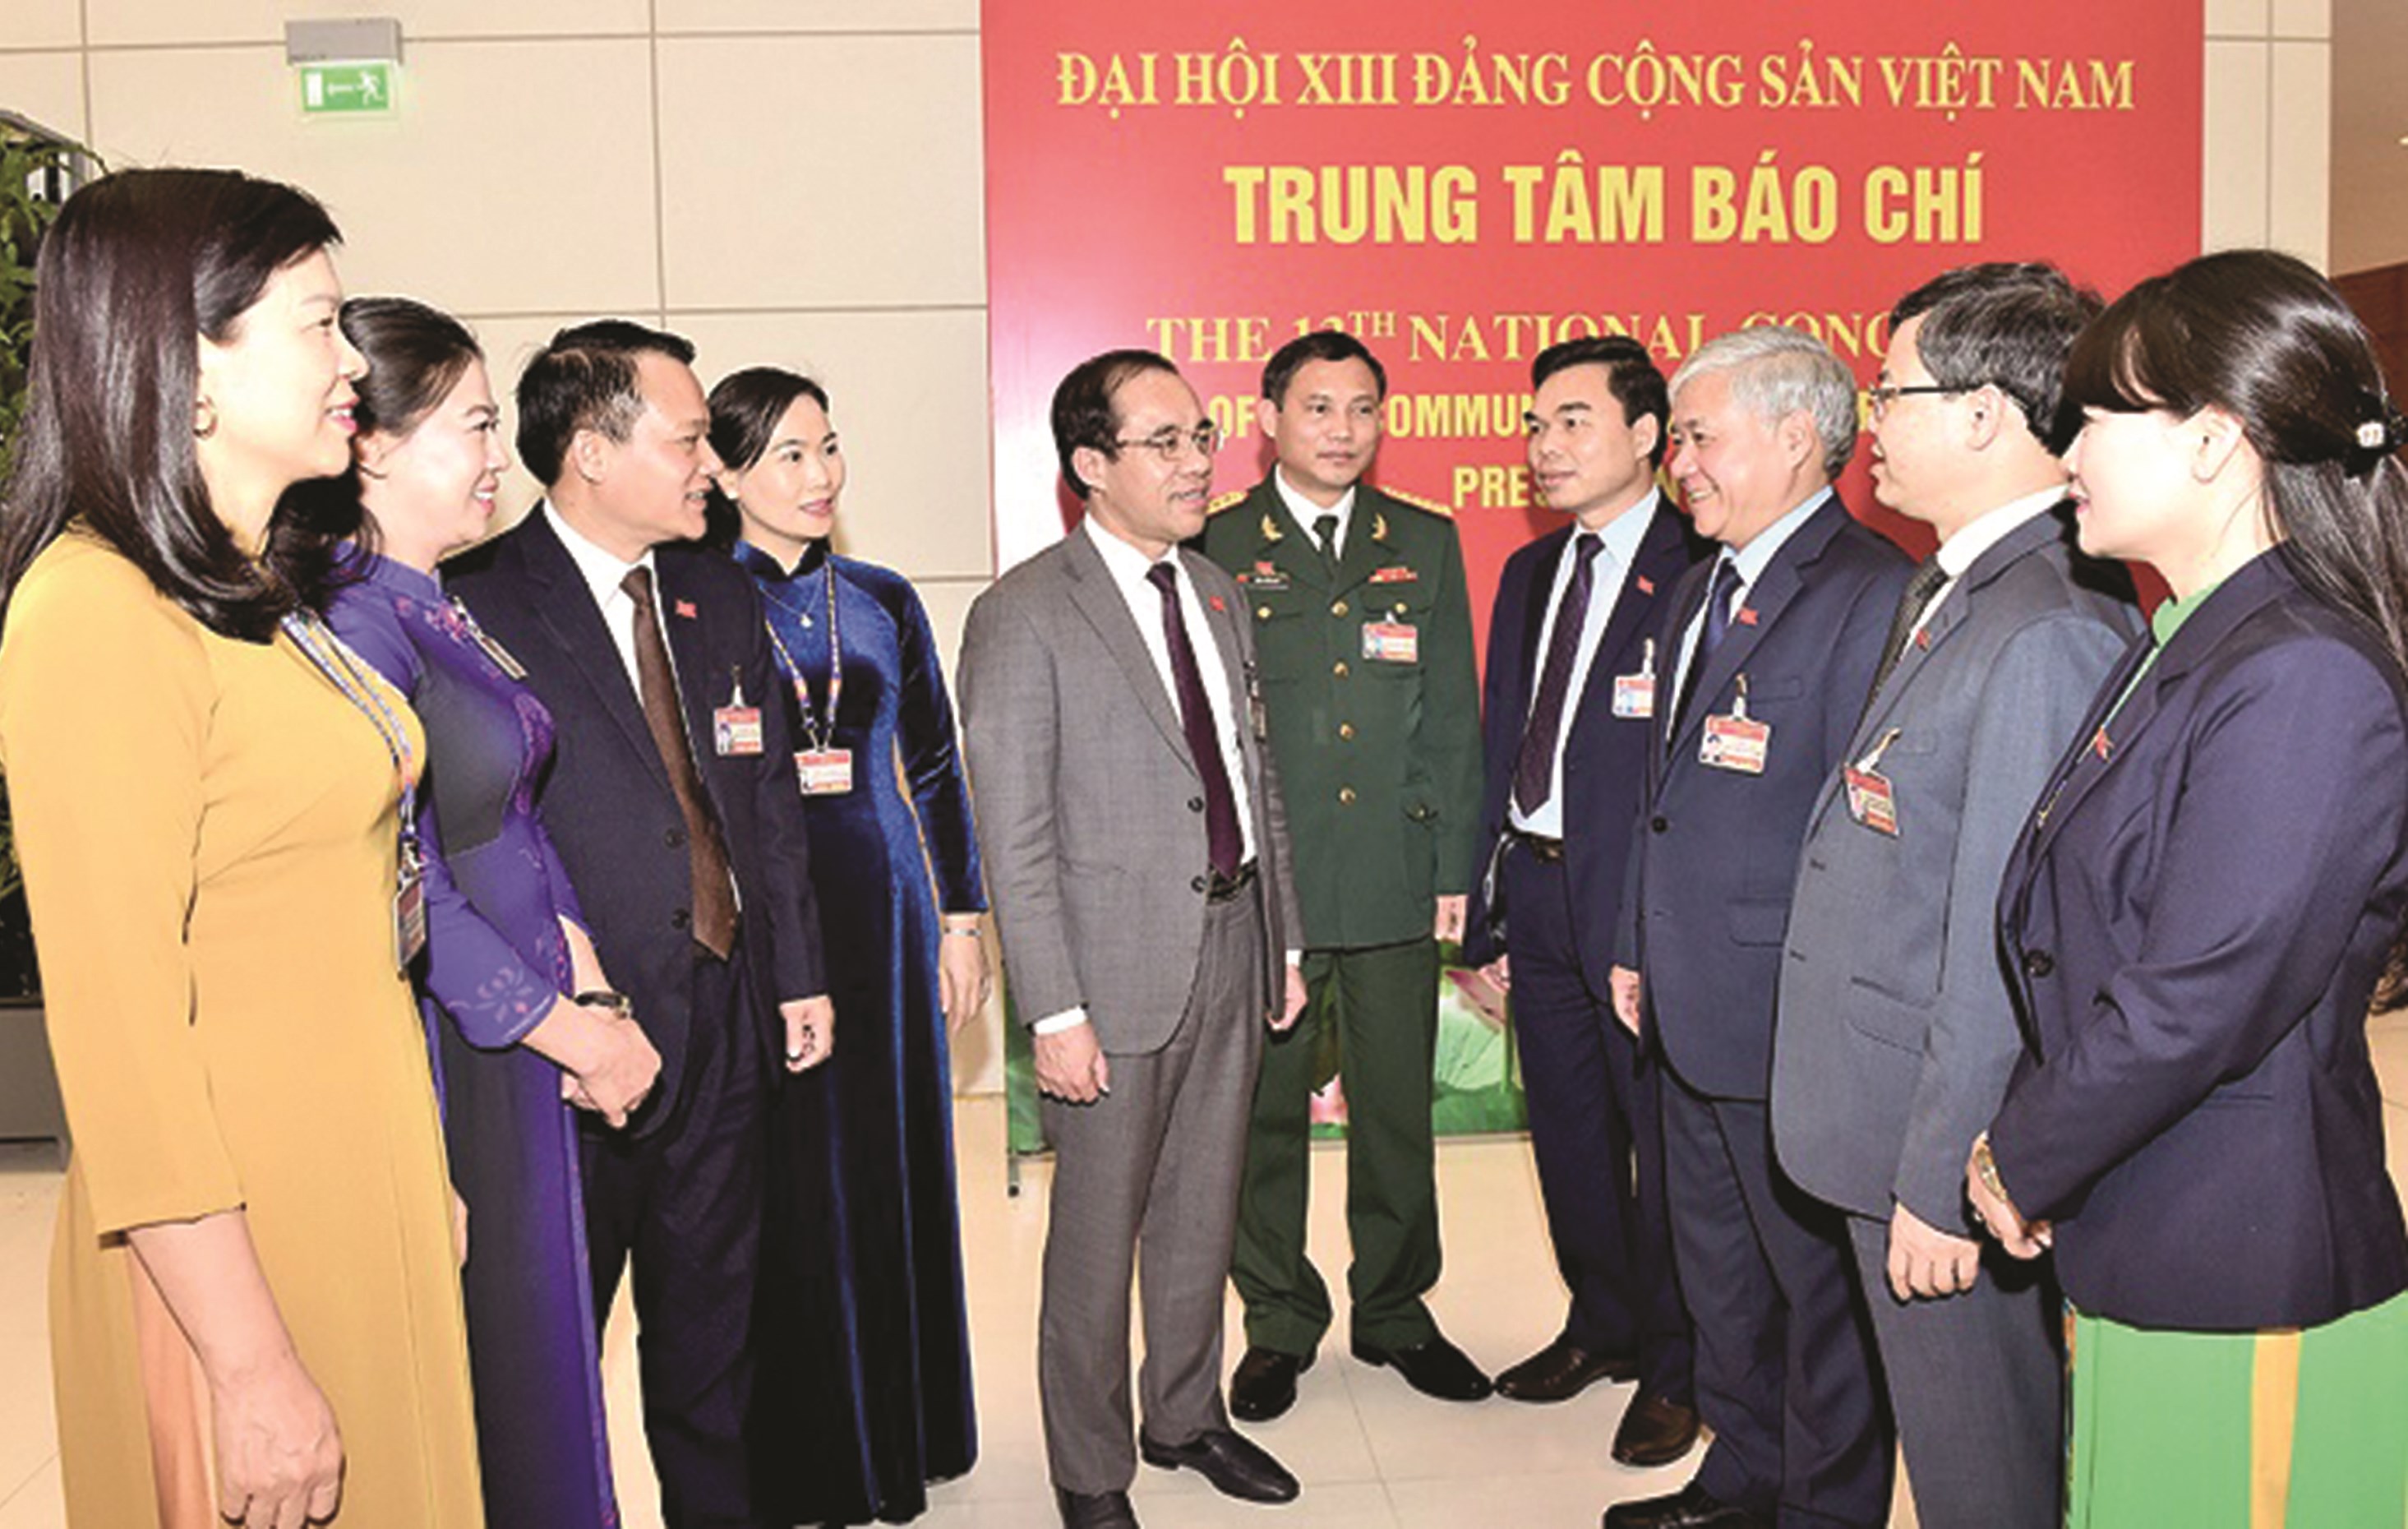 Đồng chí Đỗ Văn Chiến cùng Đoàn đại biểu tỉnh Tuyên Quang trao đổi bên lề Đại hội lần thứ XIII của Đảng sáng 30/1/2021.